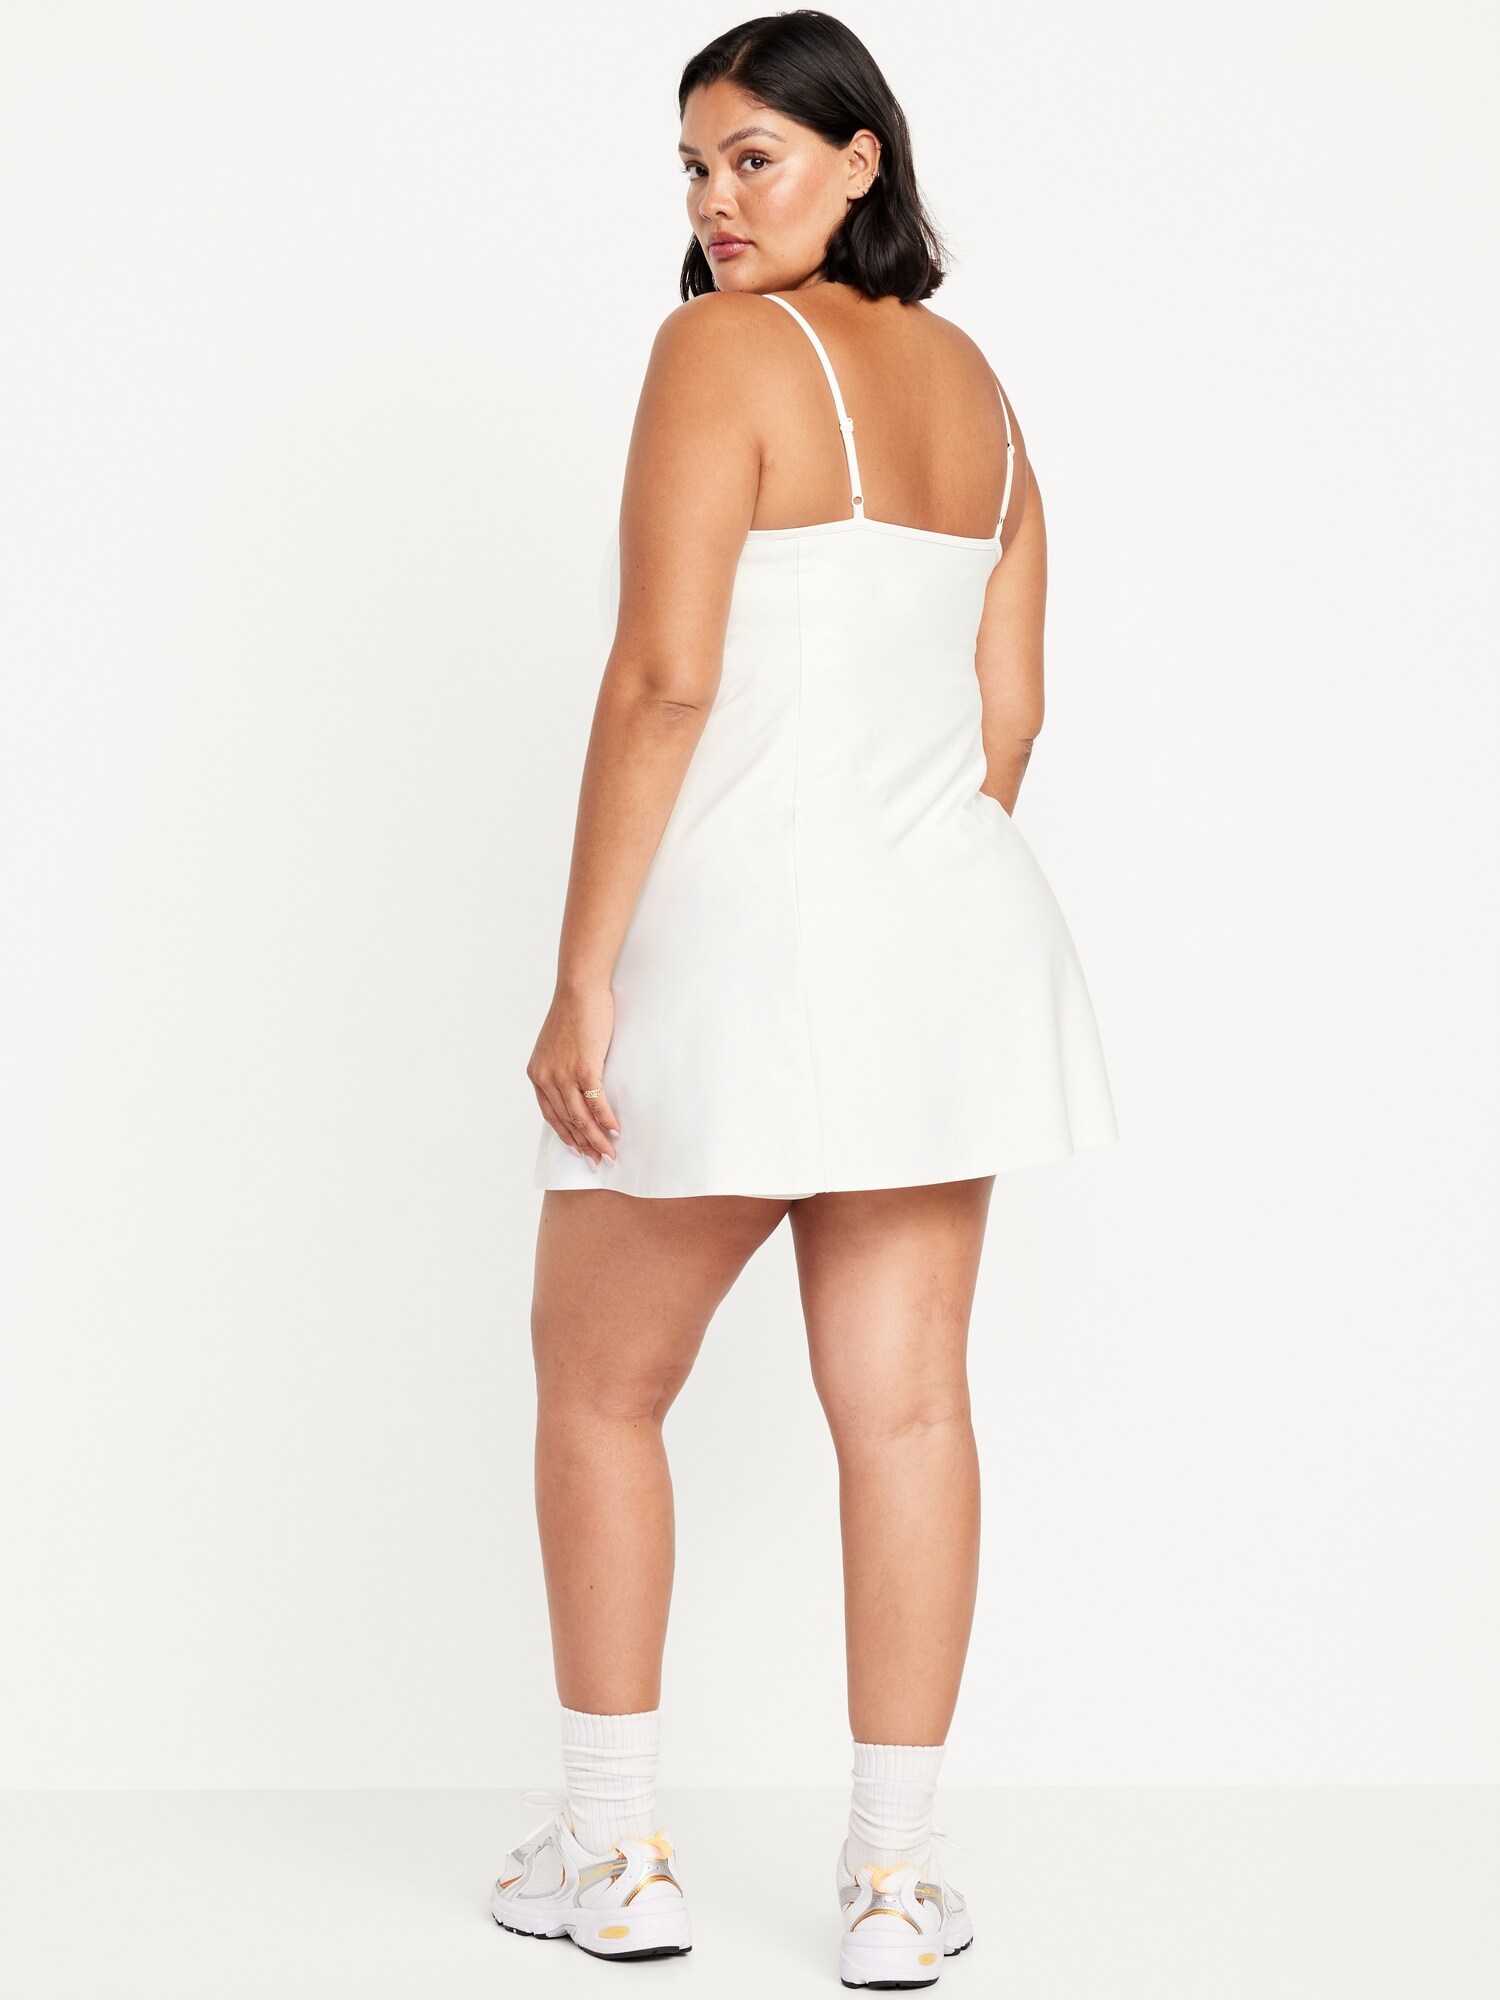 Forever 21 Women's Dual Cami Strap Bralette in White Medium